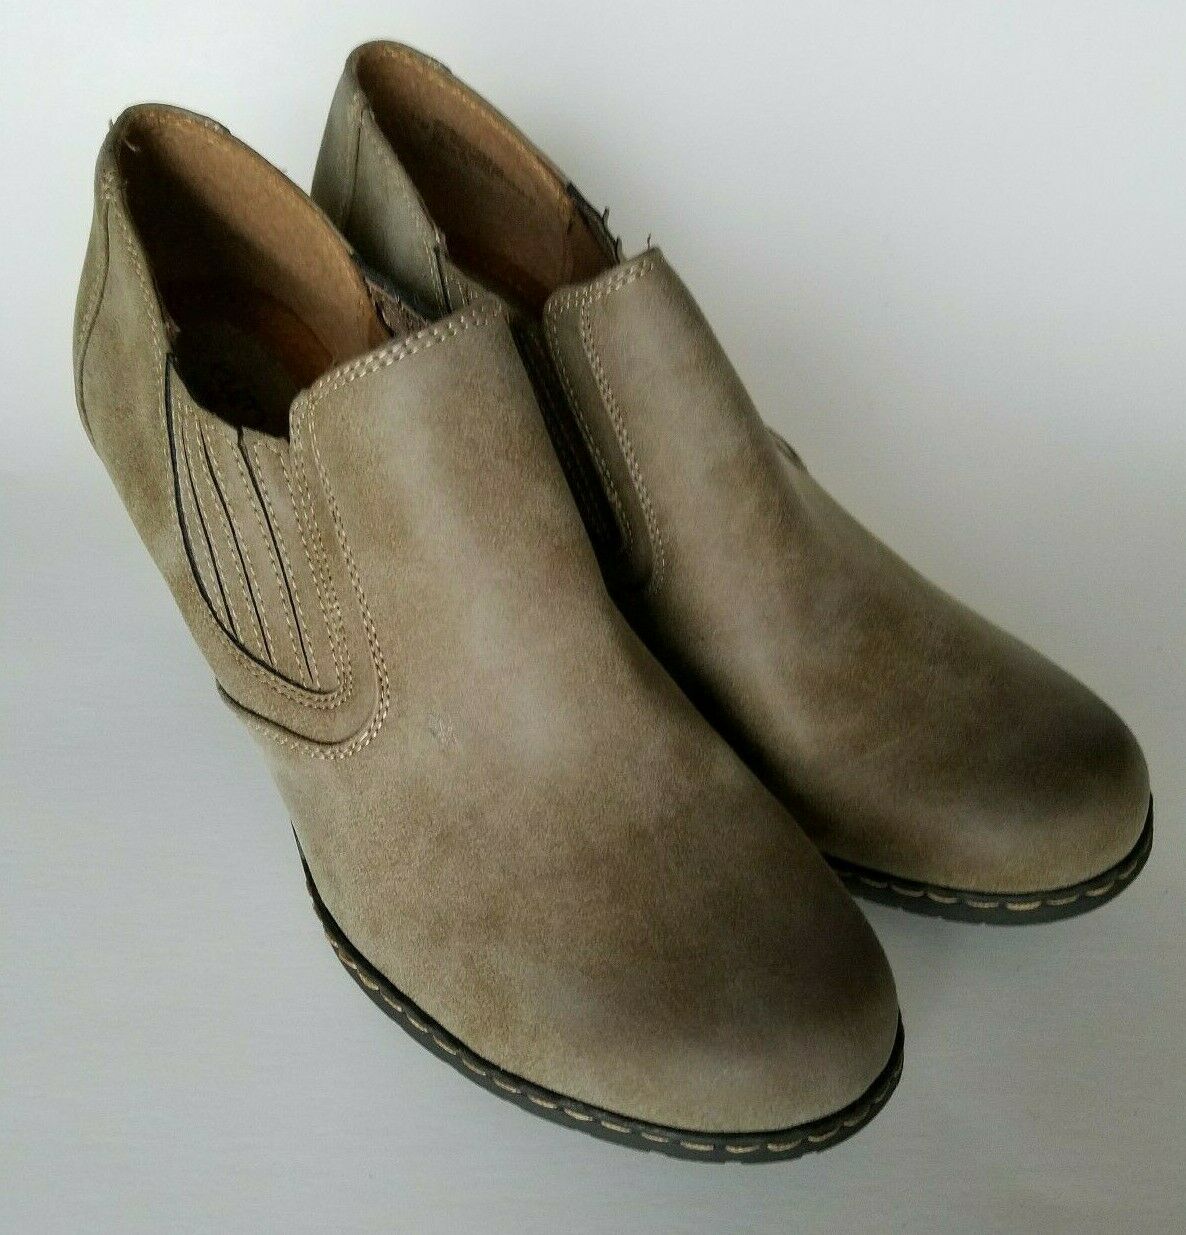 sofft pueblo leather block heel boot